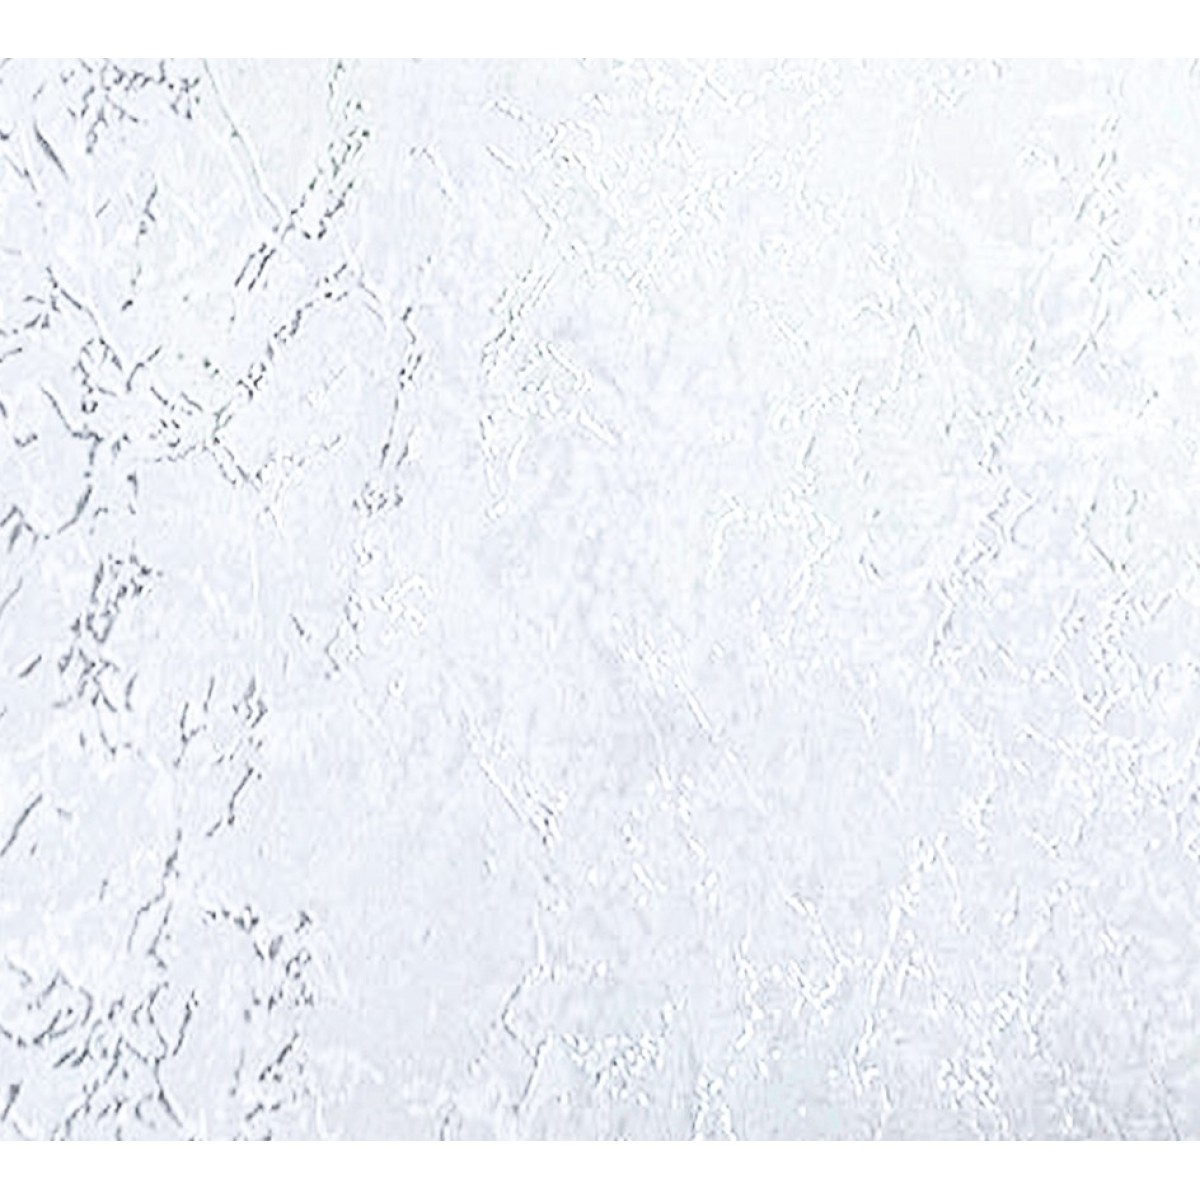 Ρόλερ Λευκό με Μηχανισμό 100% Σκίασης 180x300cm ARS-12180